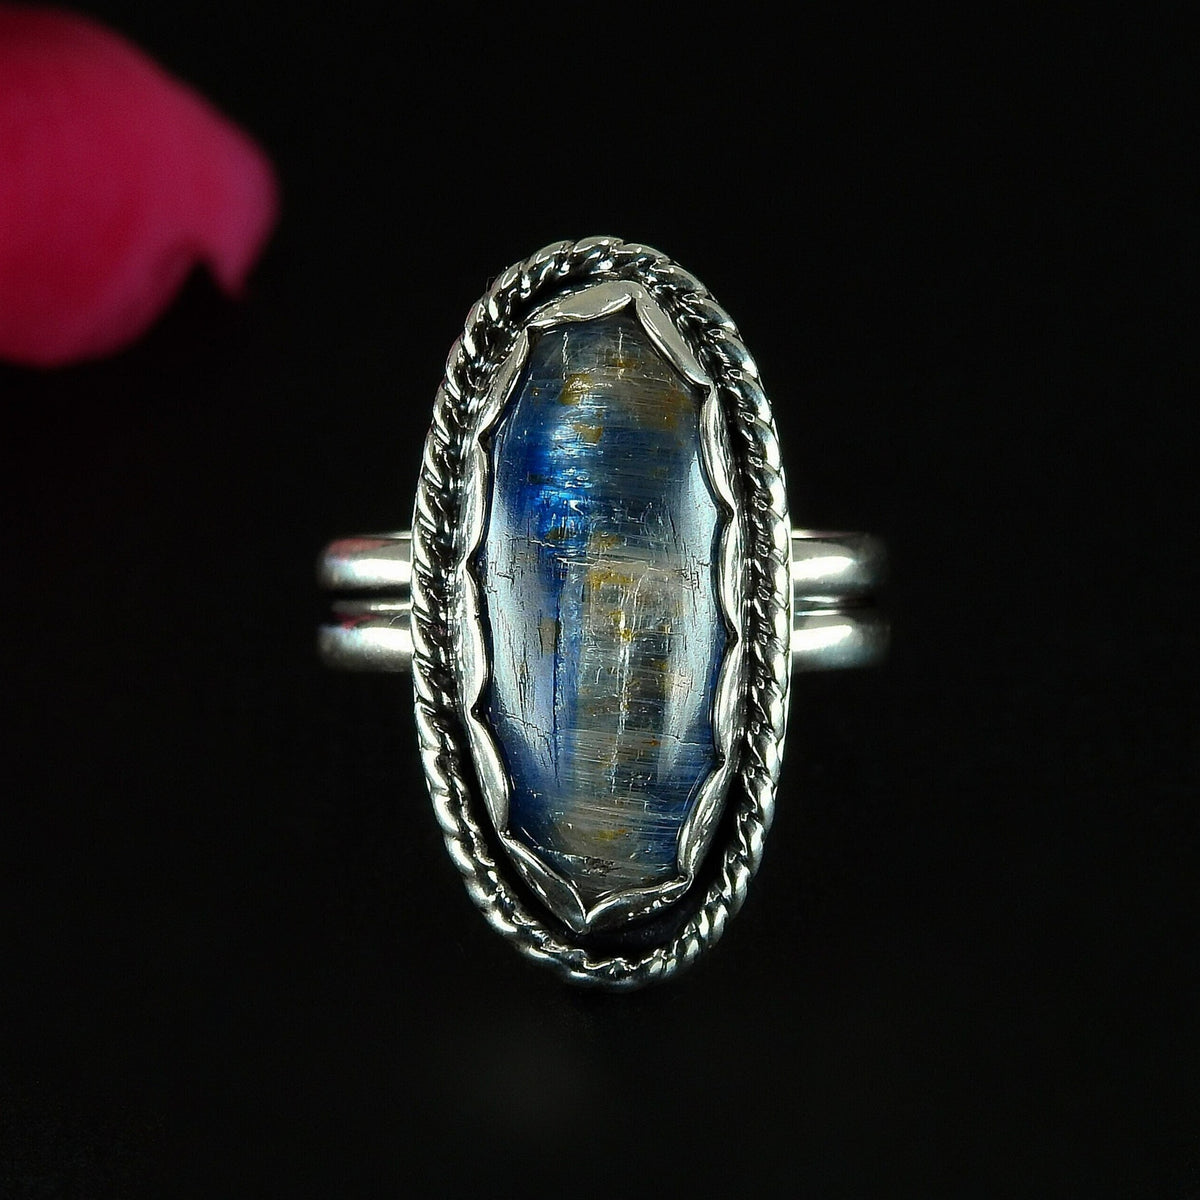 Blue Kyanite Ring - Size 6 1/2 - Sterling Silver - Large Kyanite Statement Ring - Oval Kyanite Jewellery - OOAK Kyanite Gemstone Ring